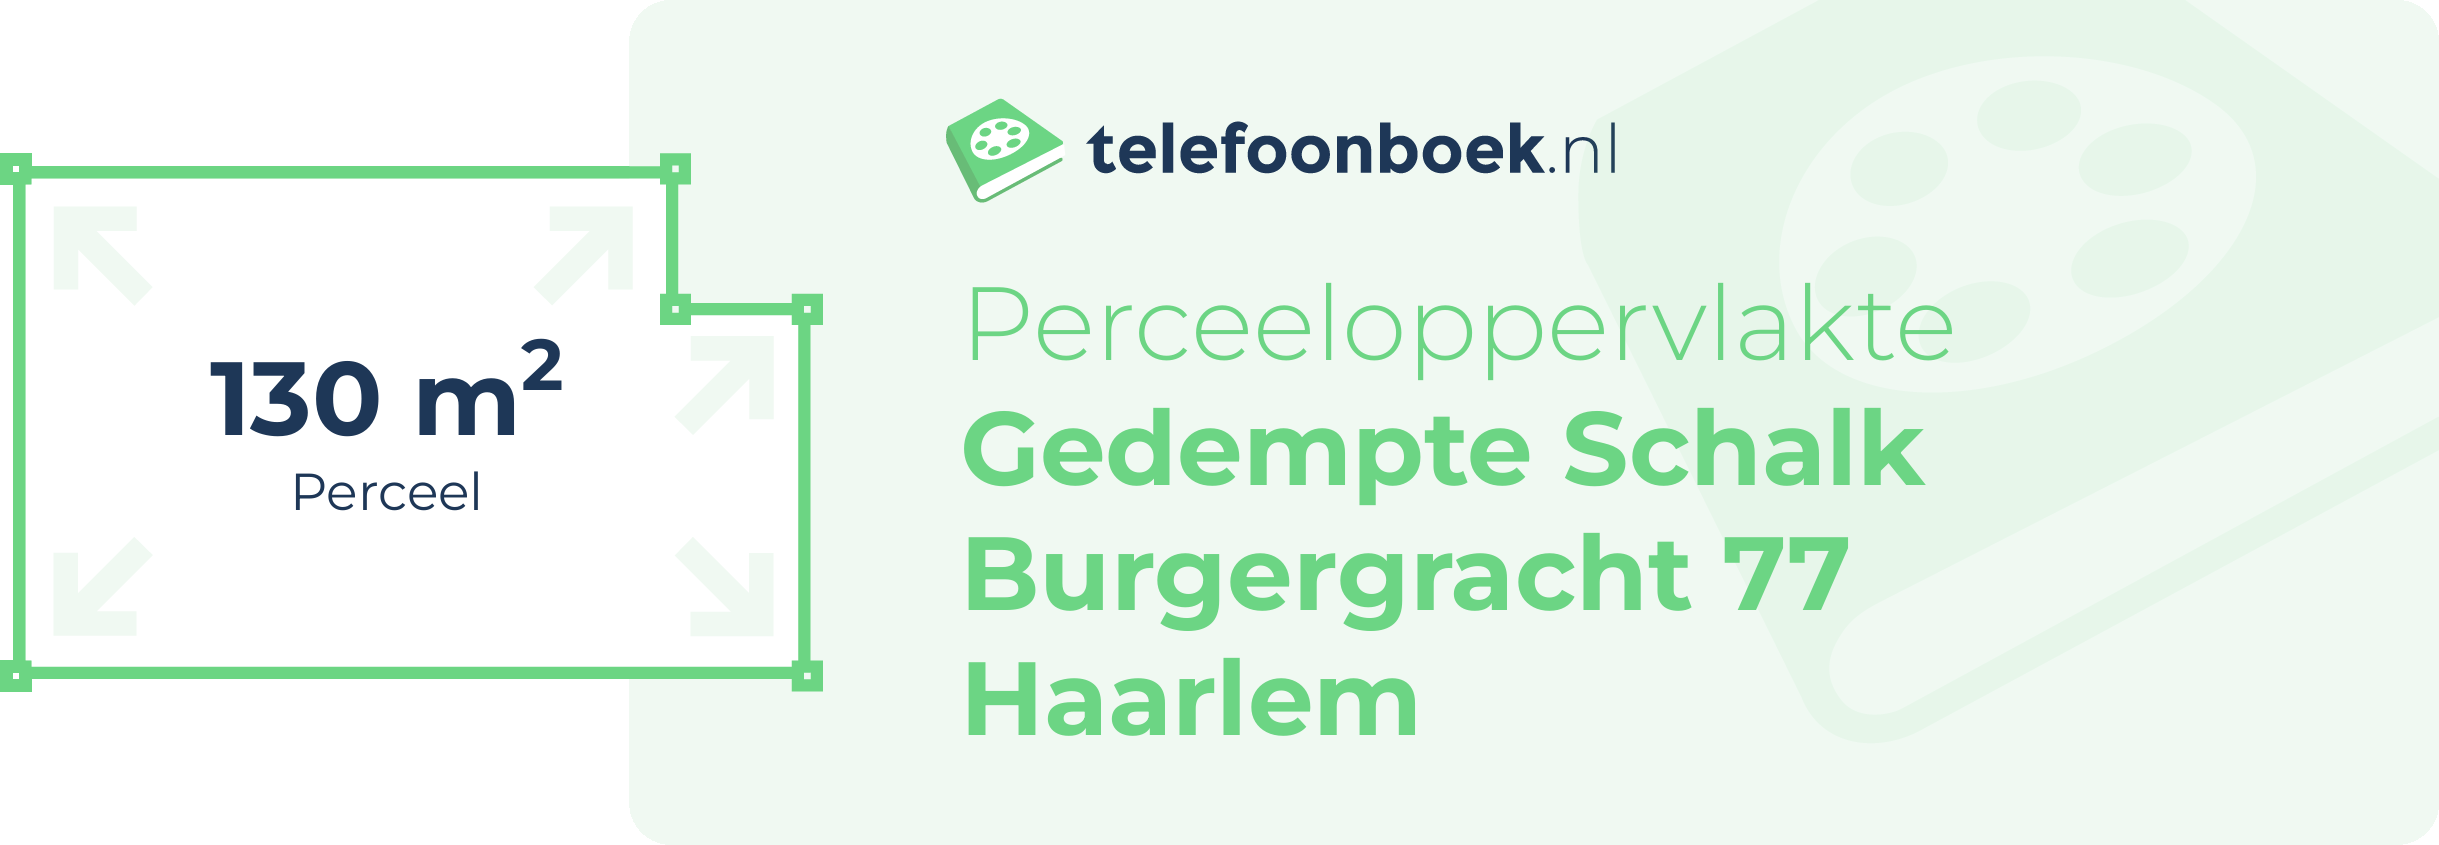 Perceeloppervlakte Gedempte Schalk Burgergracht 77 Haarlem